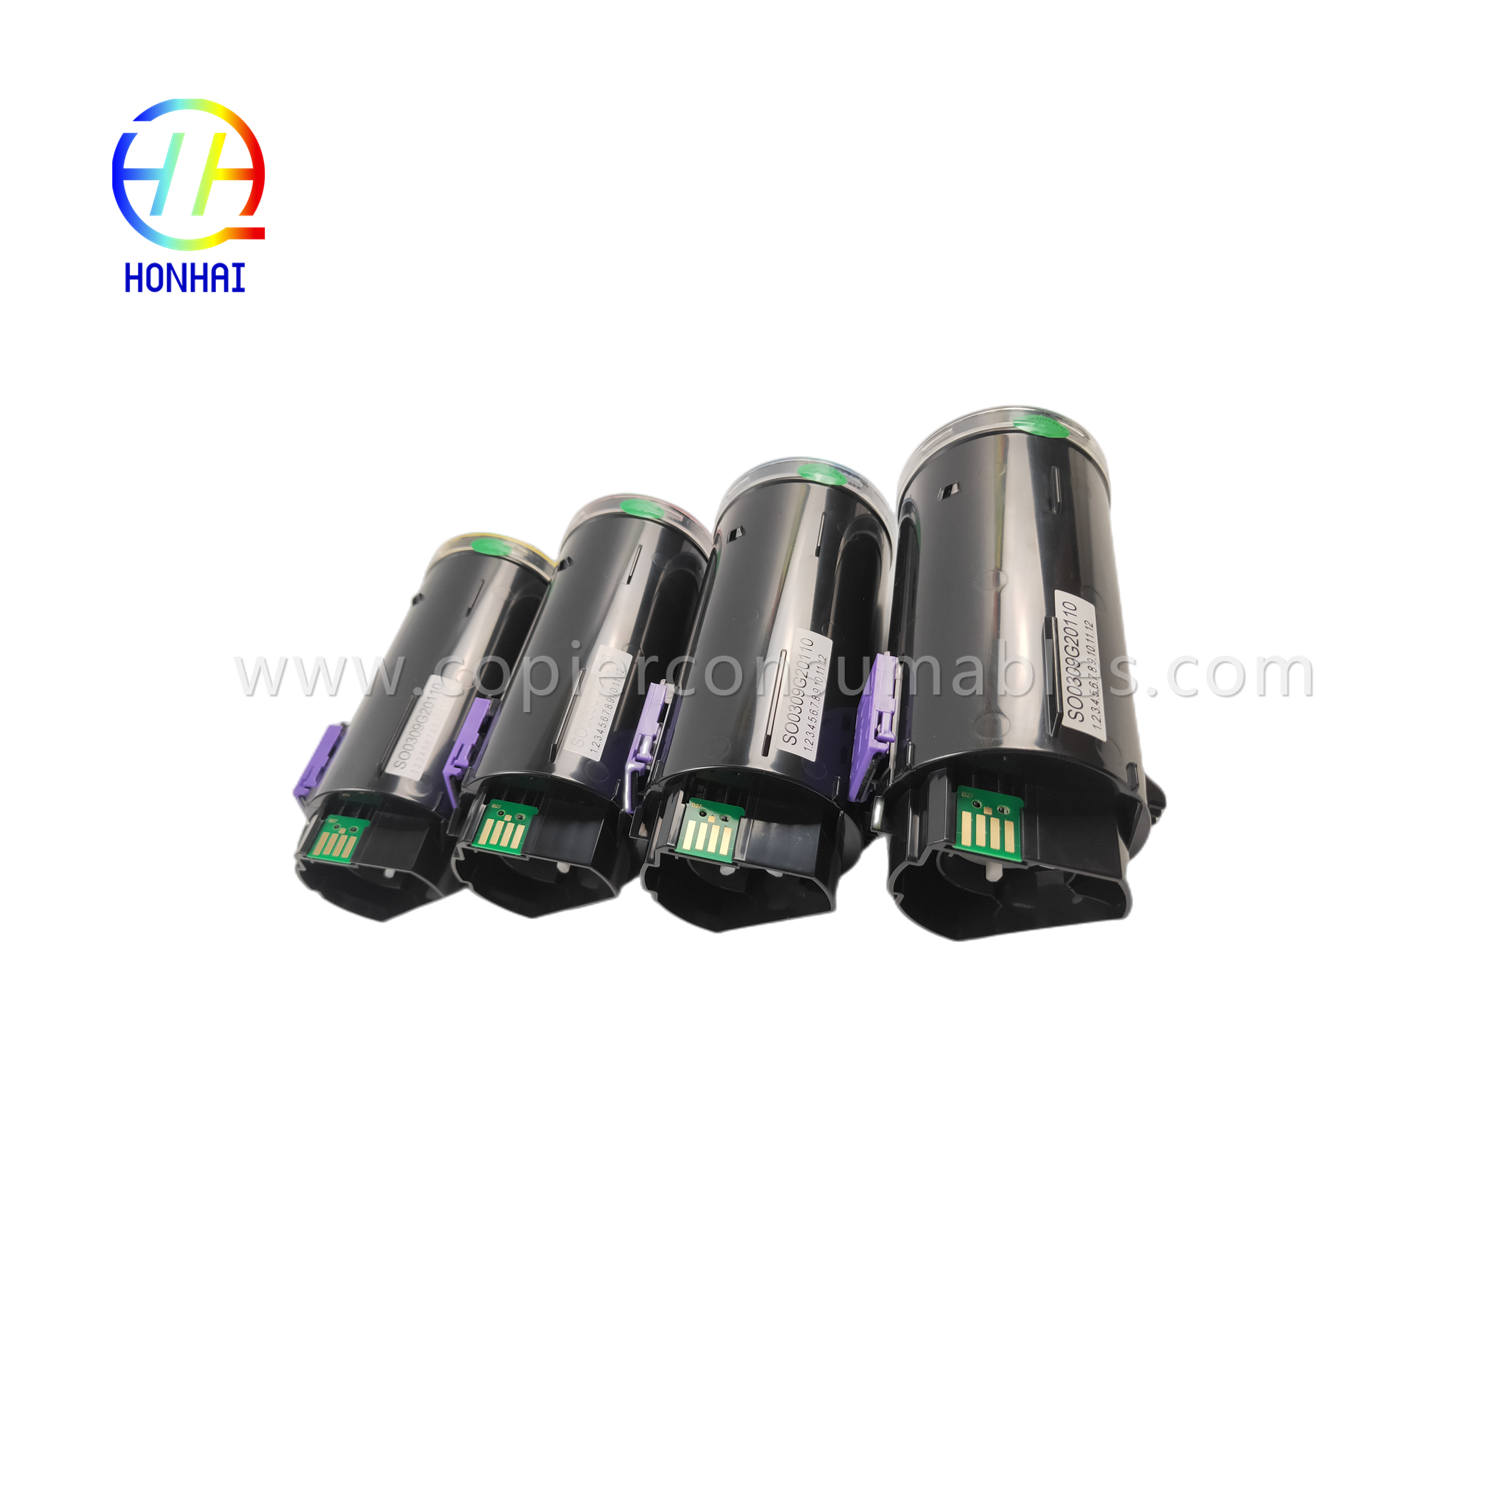 https://www.copierconsumables.com/toner-cartridge-set-imported-powder-for-ricoh-imc530-imc530f-imc530fb-ref-418240-ref-418241-ref-418242-ref-418233